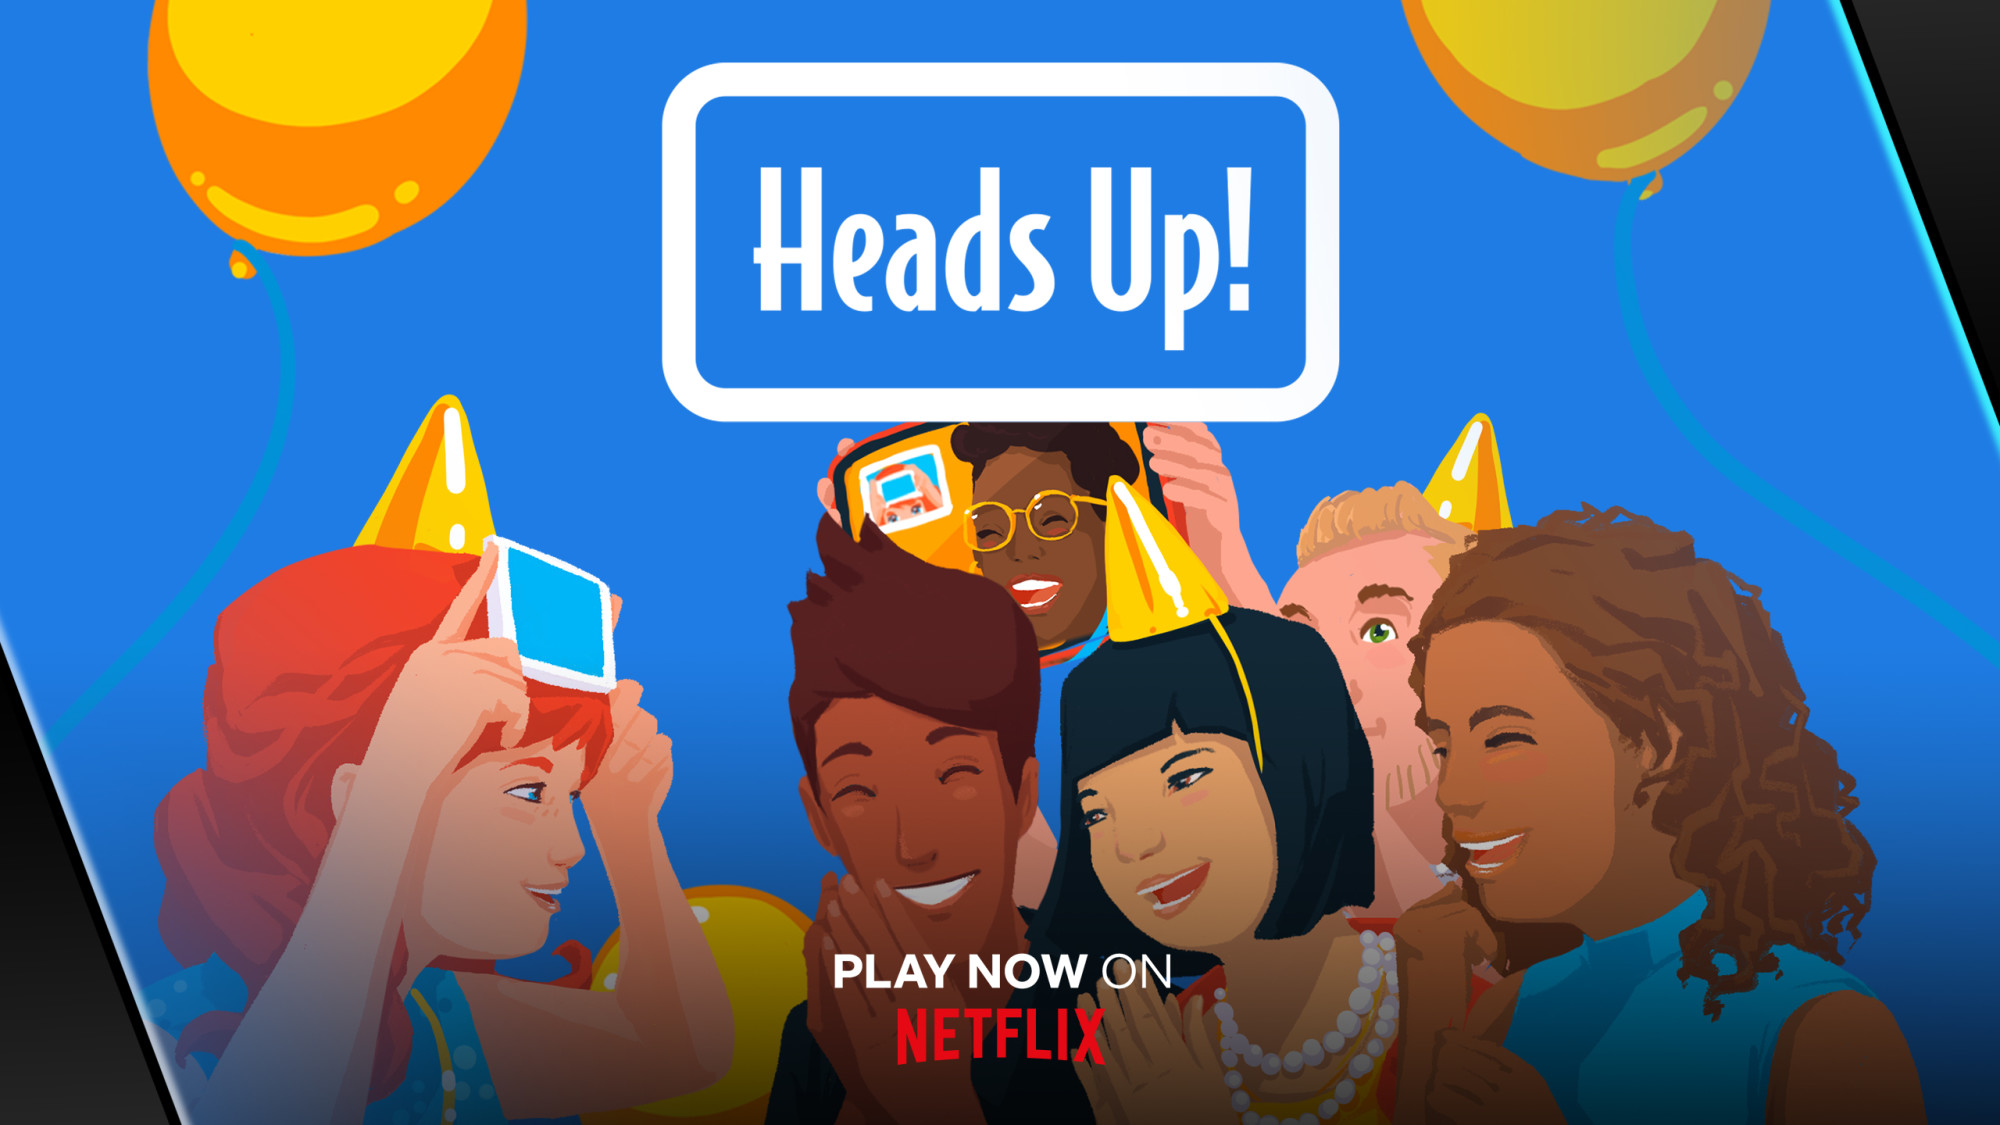 Chegou o jogo Netflix Heads Up! para testar seus conhecimentos de